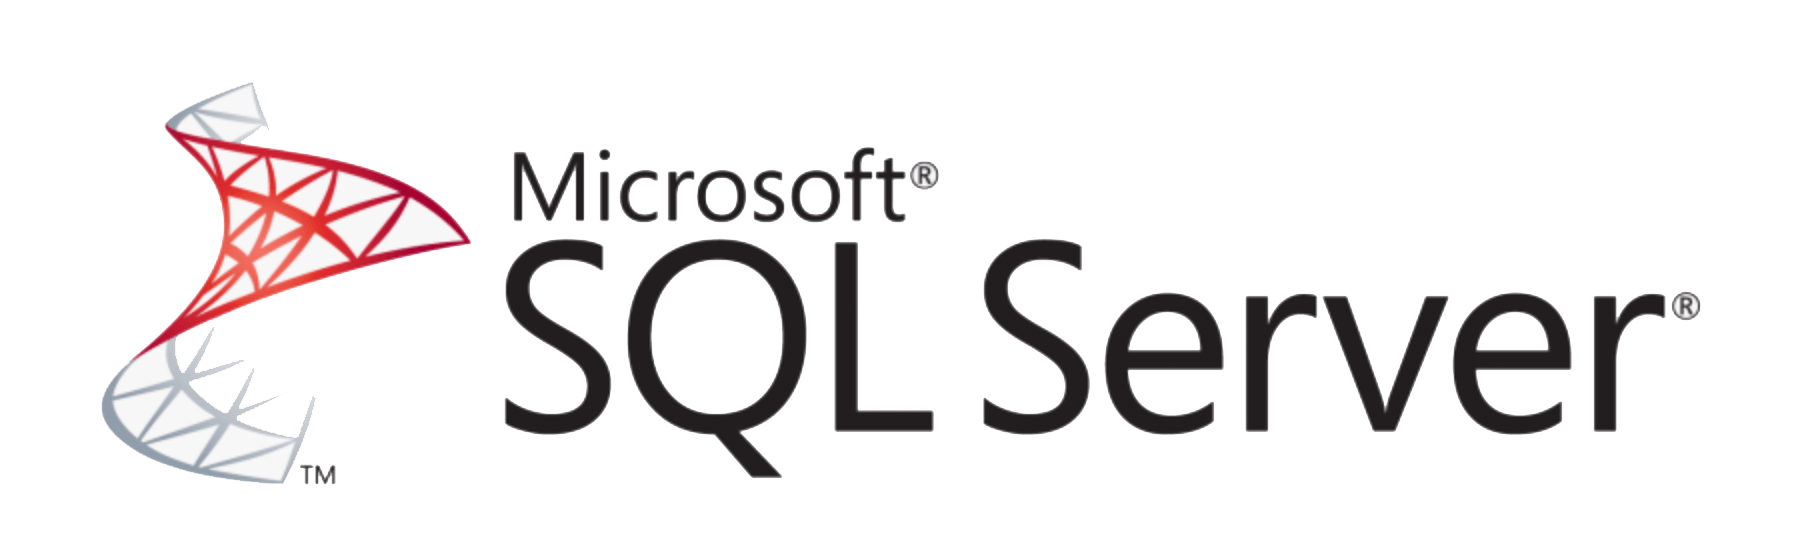 SQL Server のロゴ